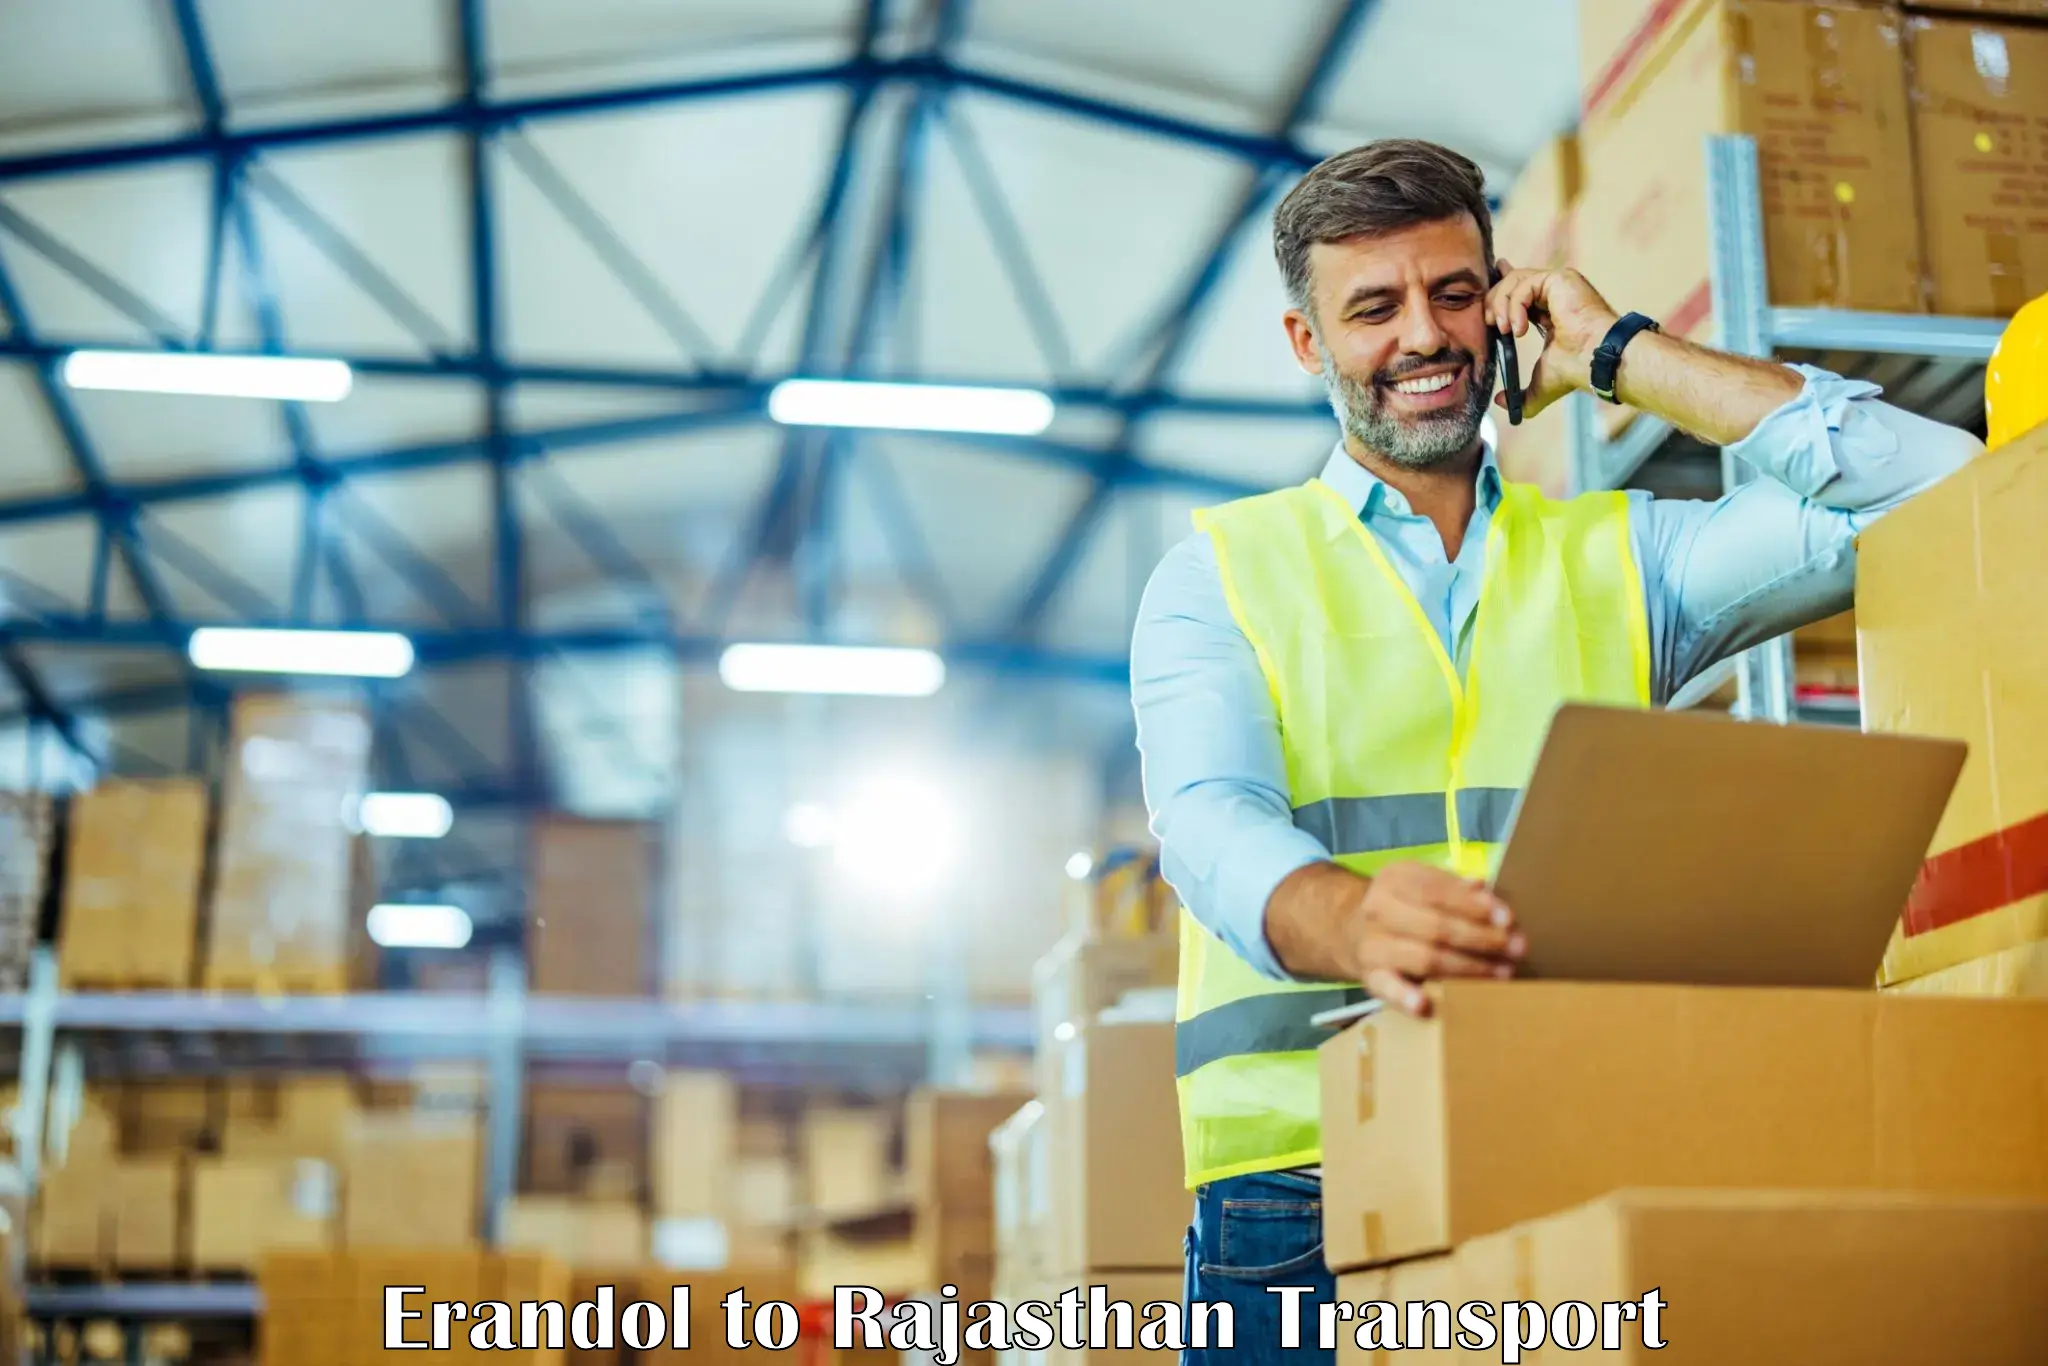 Shipping partner Erandol to Rajasthan